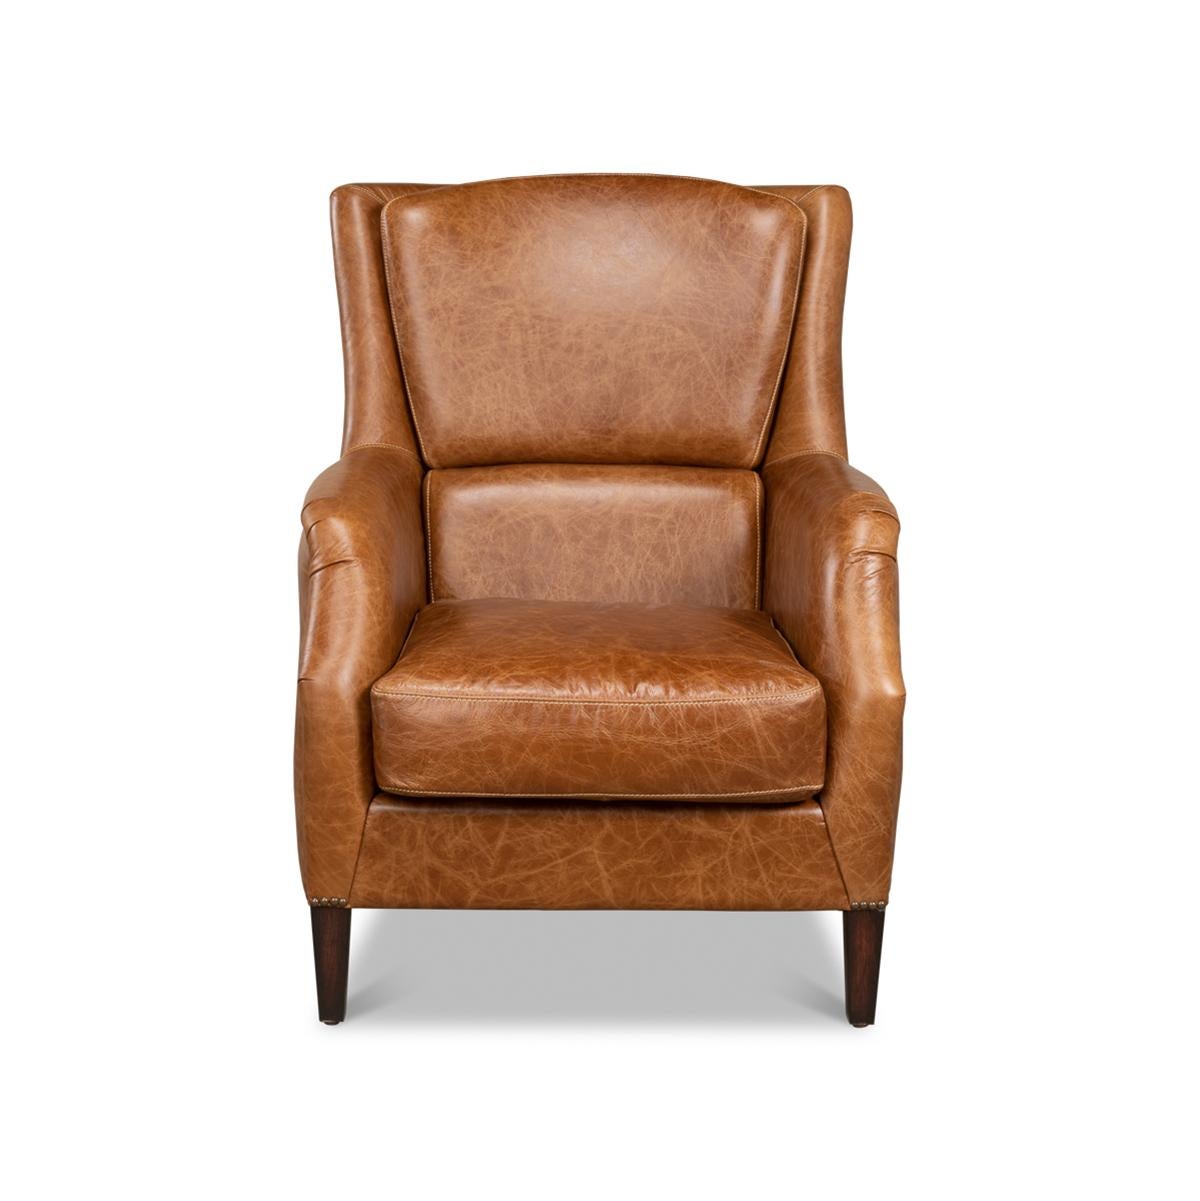 Ein traditioneller brauner Ledersessel mit Nagelkopfverzierungen. Dieser klassische Stuhl ist aus reinem Anilinleder in der Farbe Kuba braun gefertigt.

Abmessungen: 30